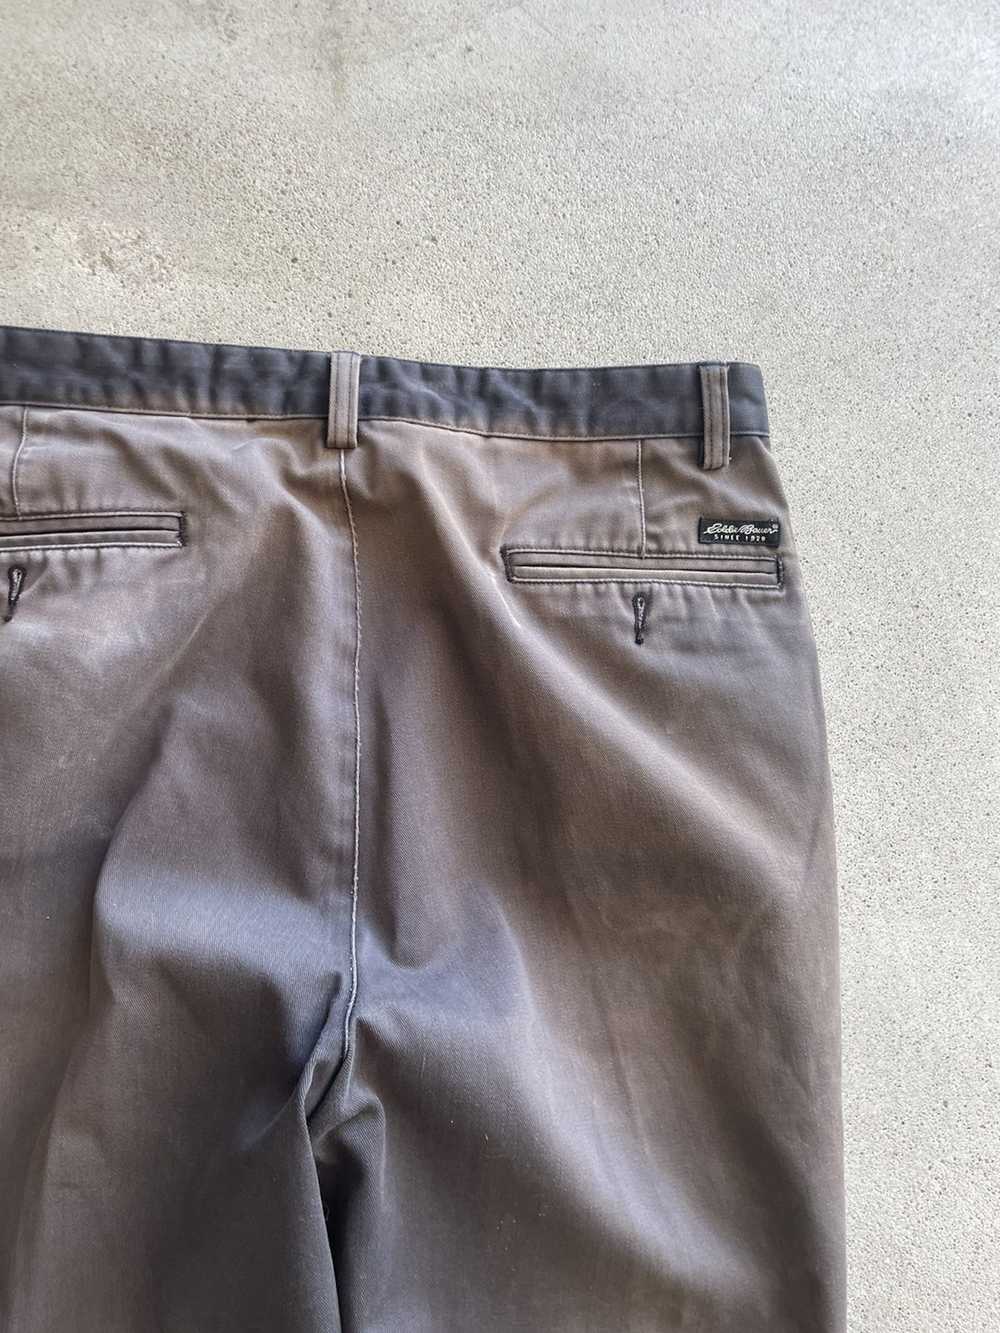 Vintage Vintage Sun Faded Khaki pants (34x29) - image 6